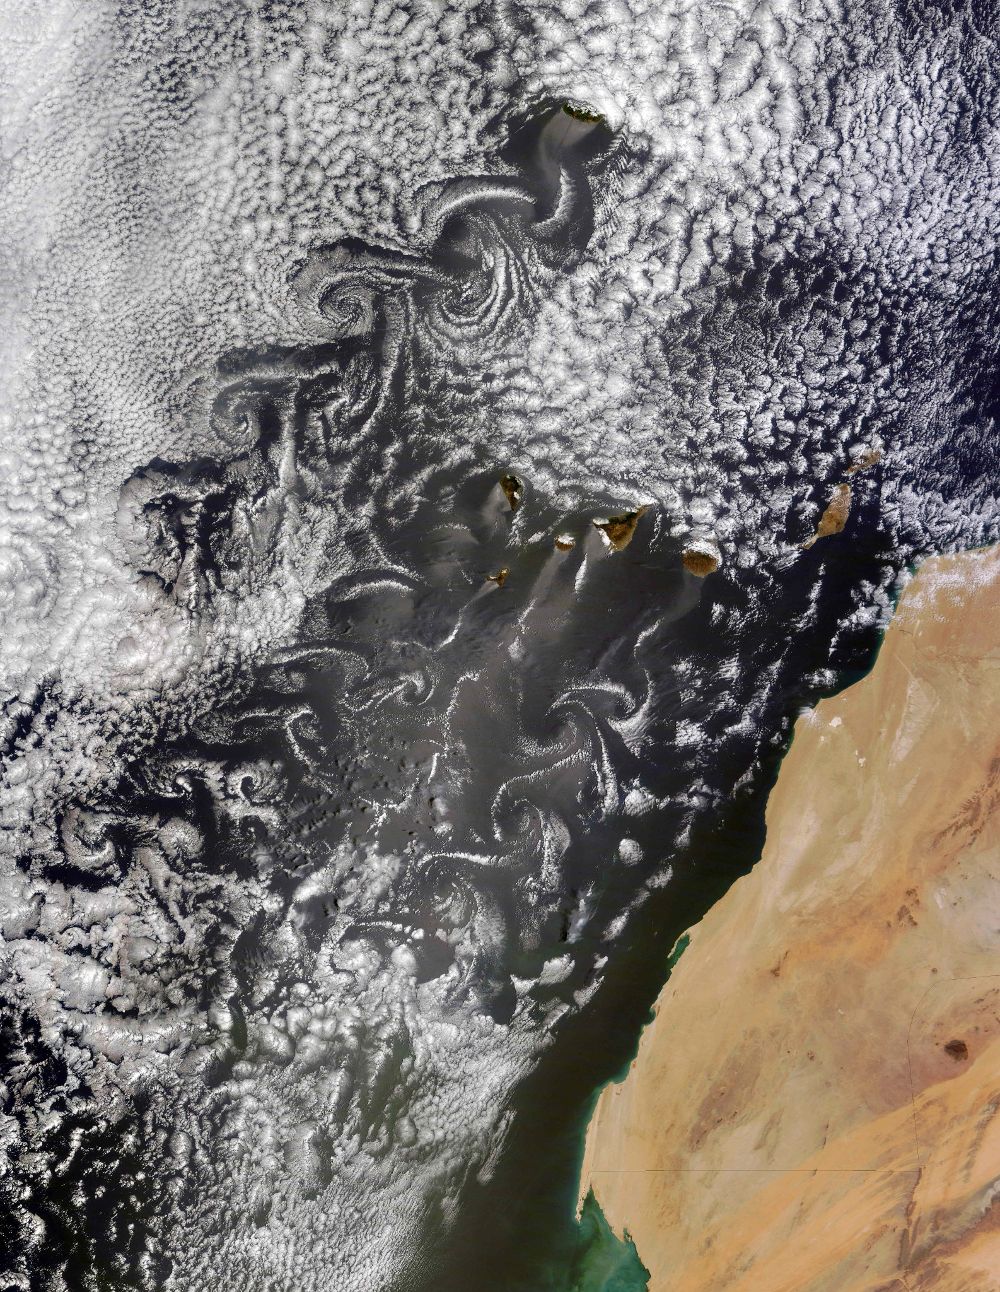 Fotografía facilitada por la NASA tomada por el satélite "Terra".